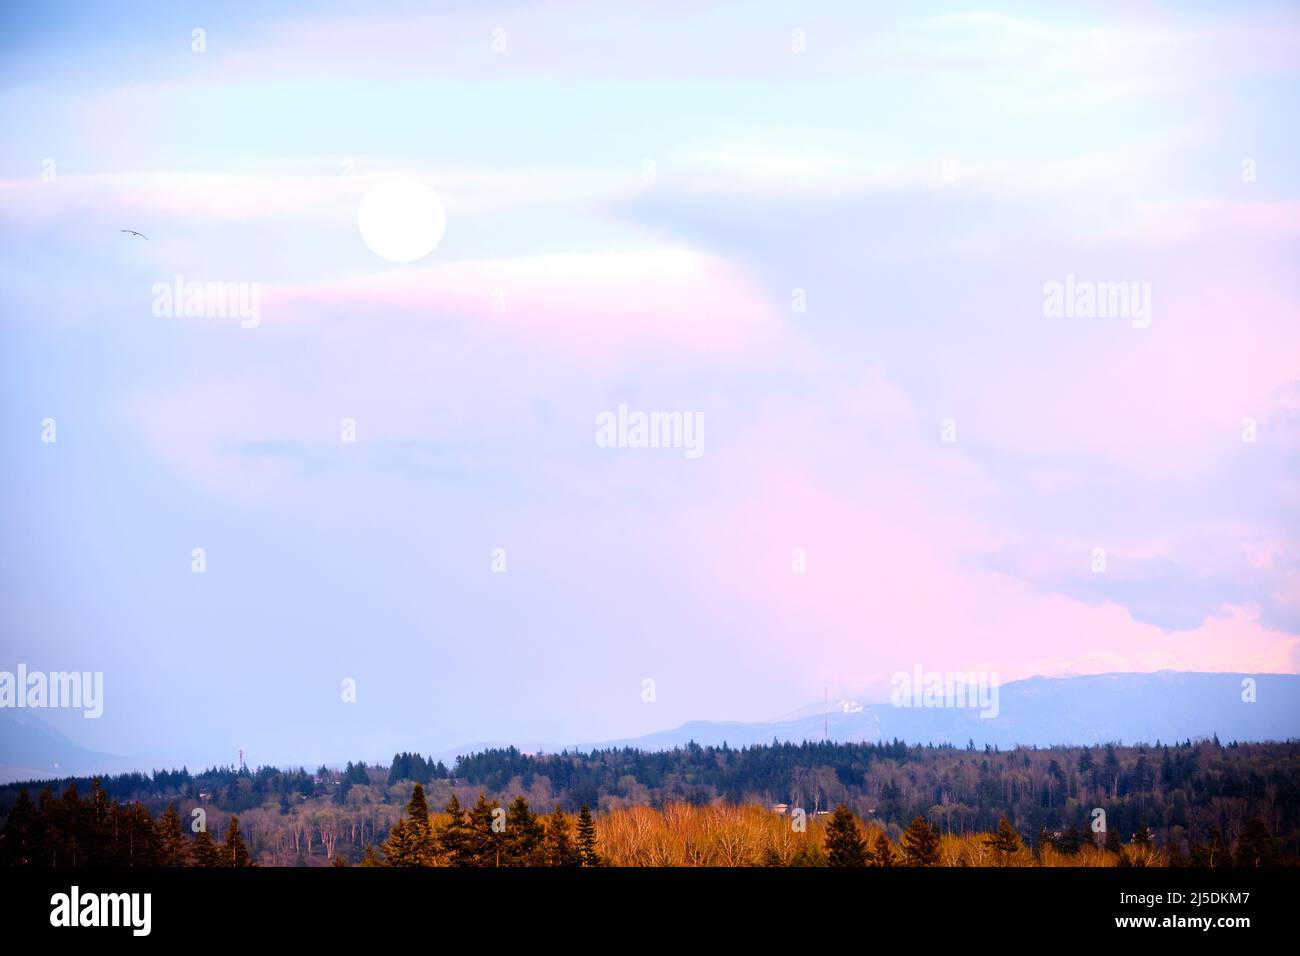 Vista diurna de la luna llena a través de cielos parcialmente nublados hacia la base del Monte Baker, WA desde White Rock, BC. Las nubes reflejan la suave luz rosa de la puesta de sol Foto de stock